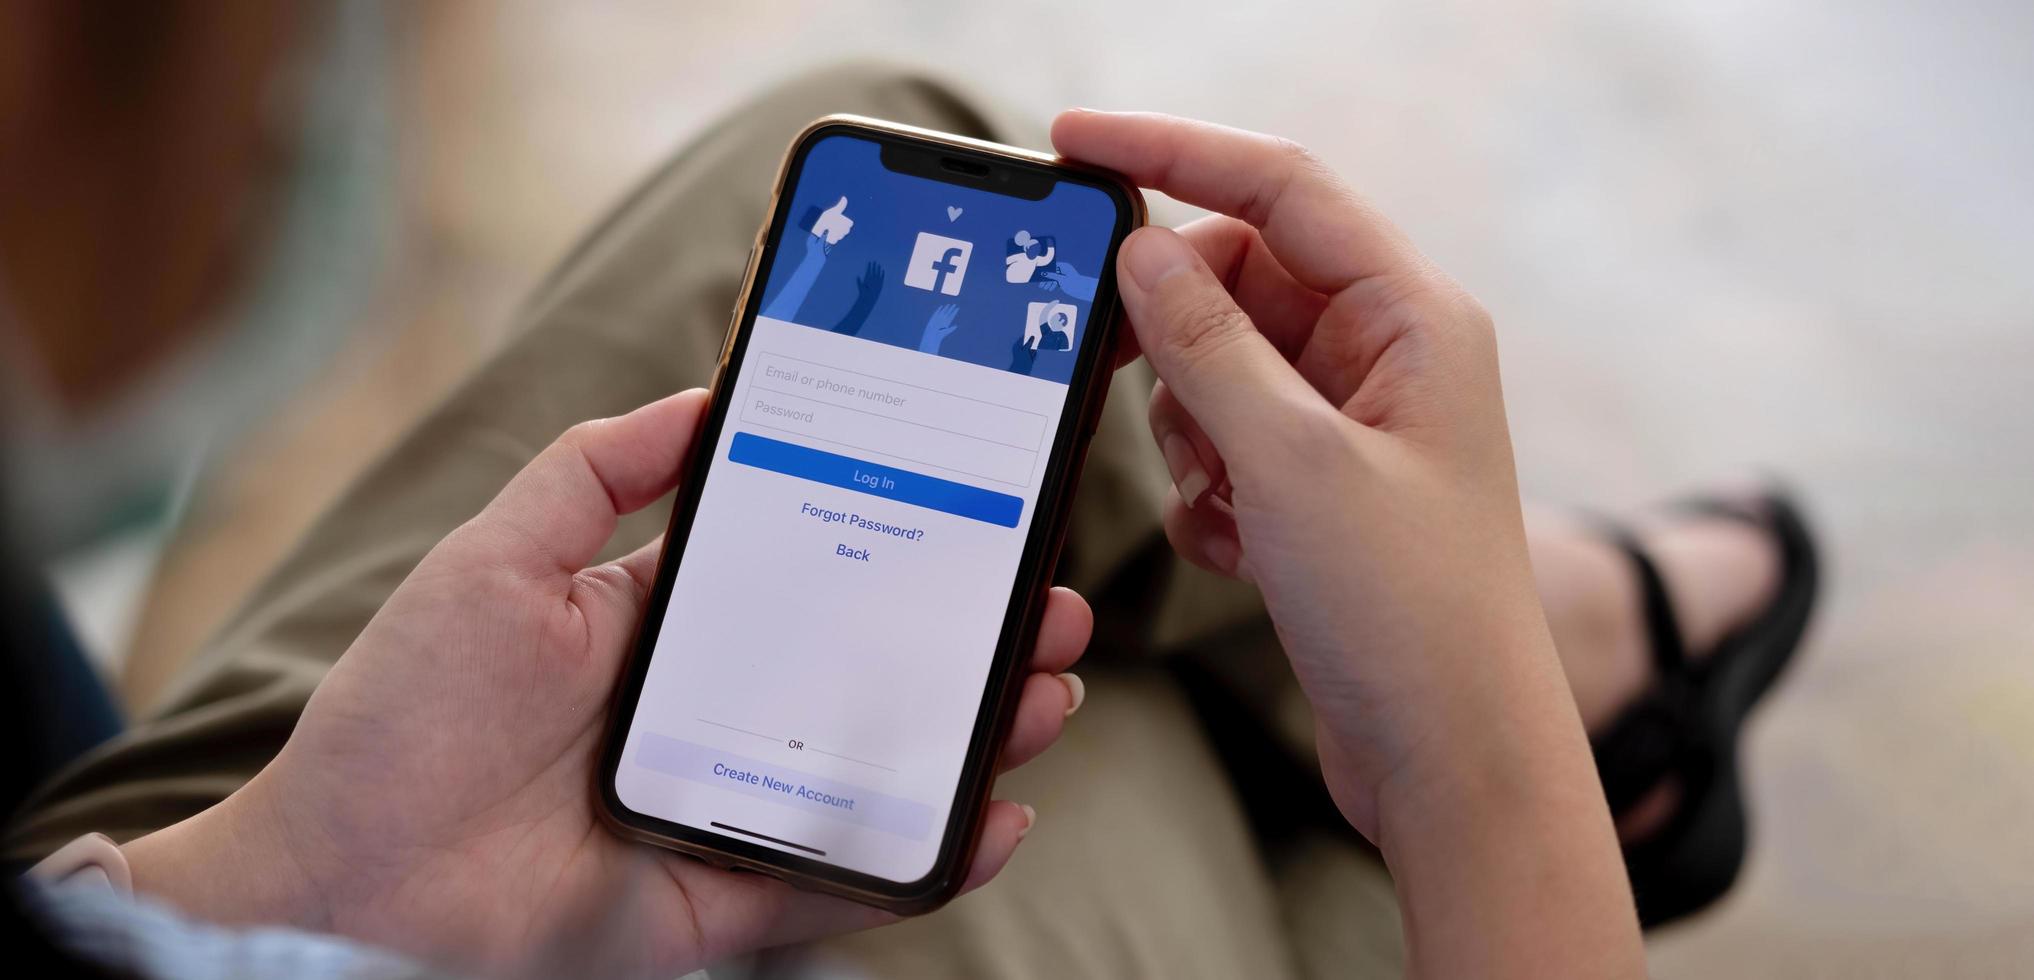 femme tenant un iphone x avec le service internet social facebook sur l'écran. photo